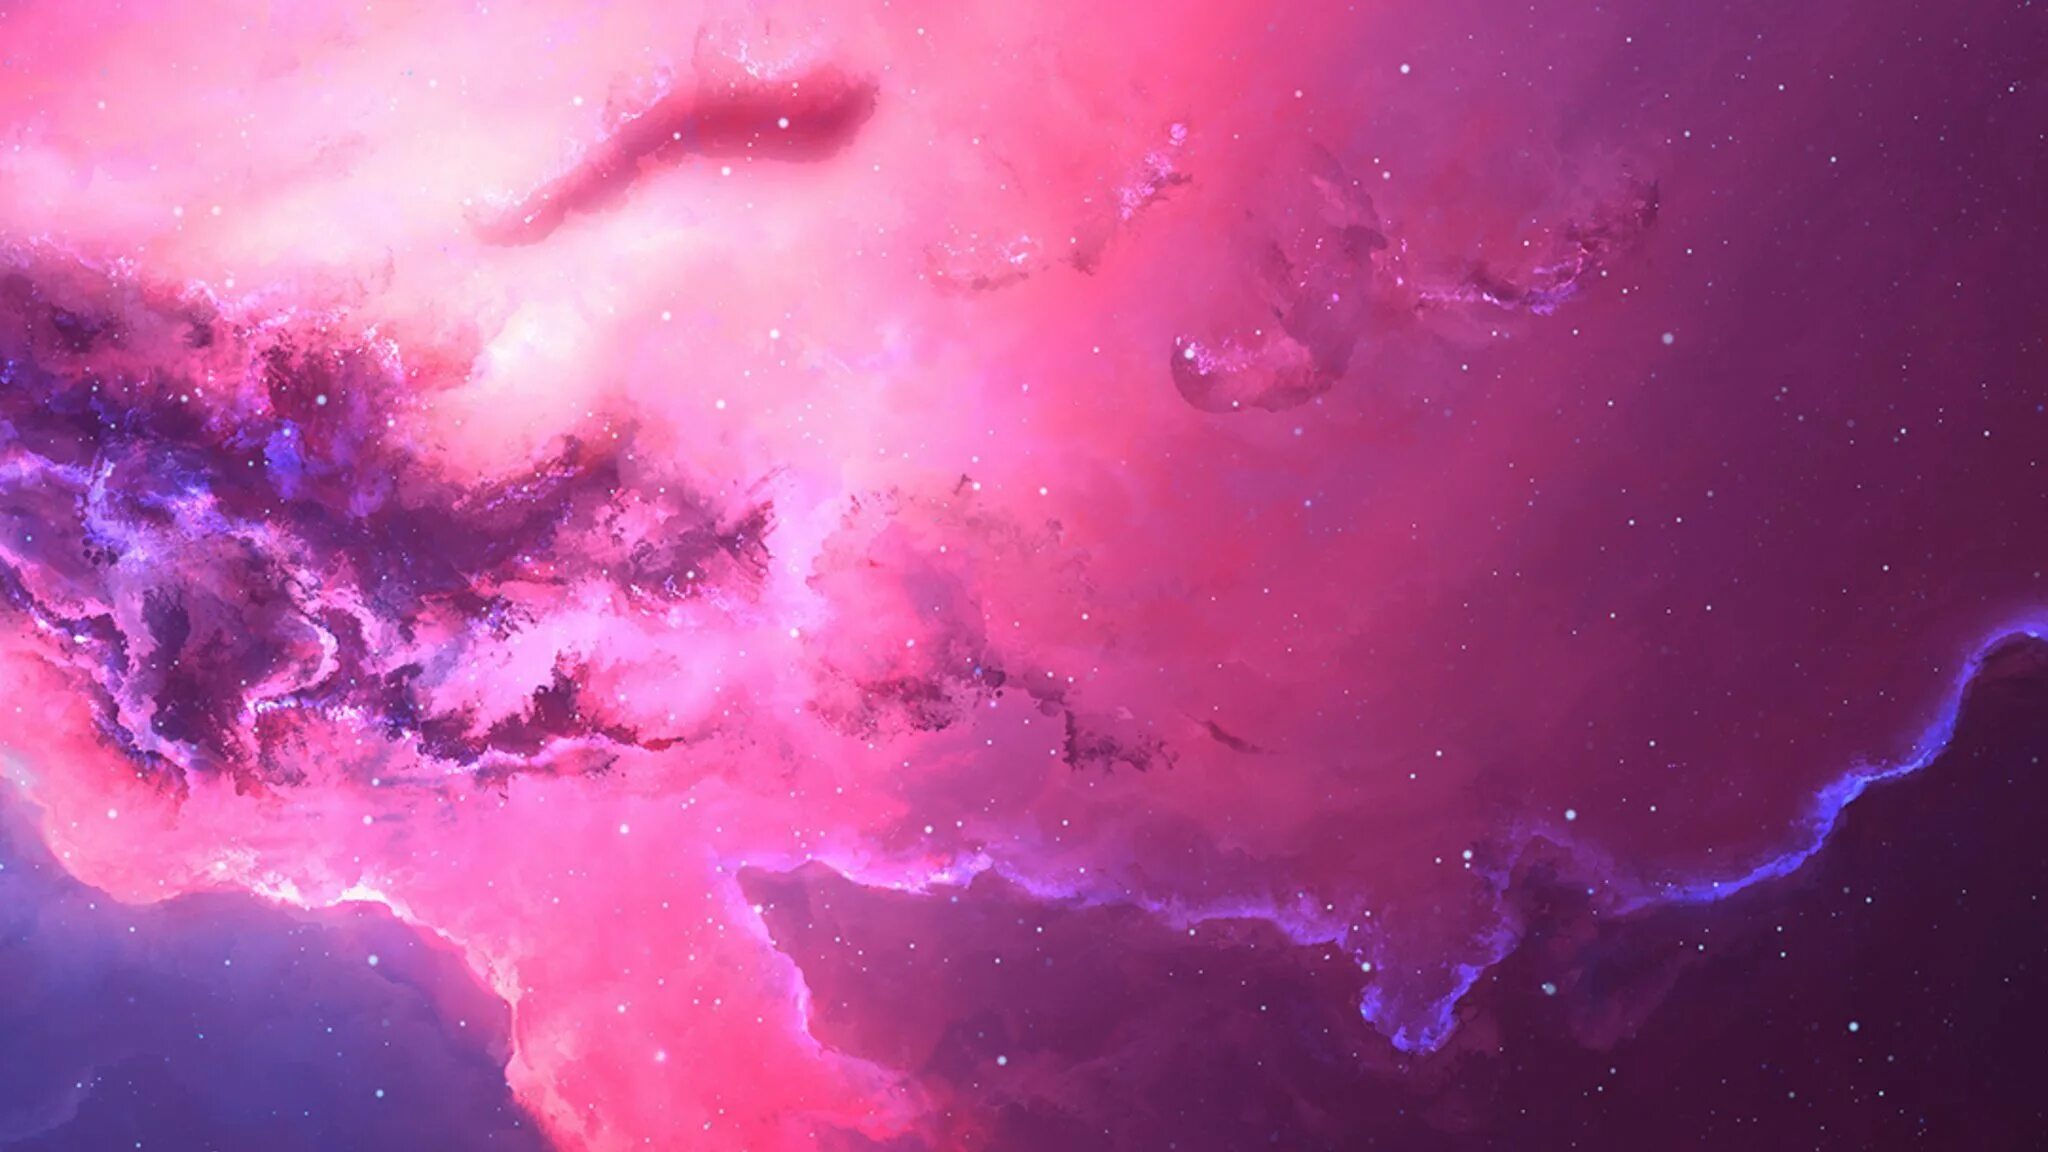 1024x576 для ютуба. Космический фон. Розовый космос. Фиолетовый космос. Космос розовый фиолетовый.